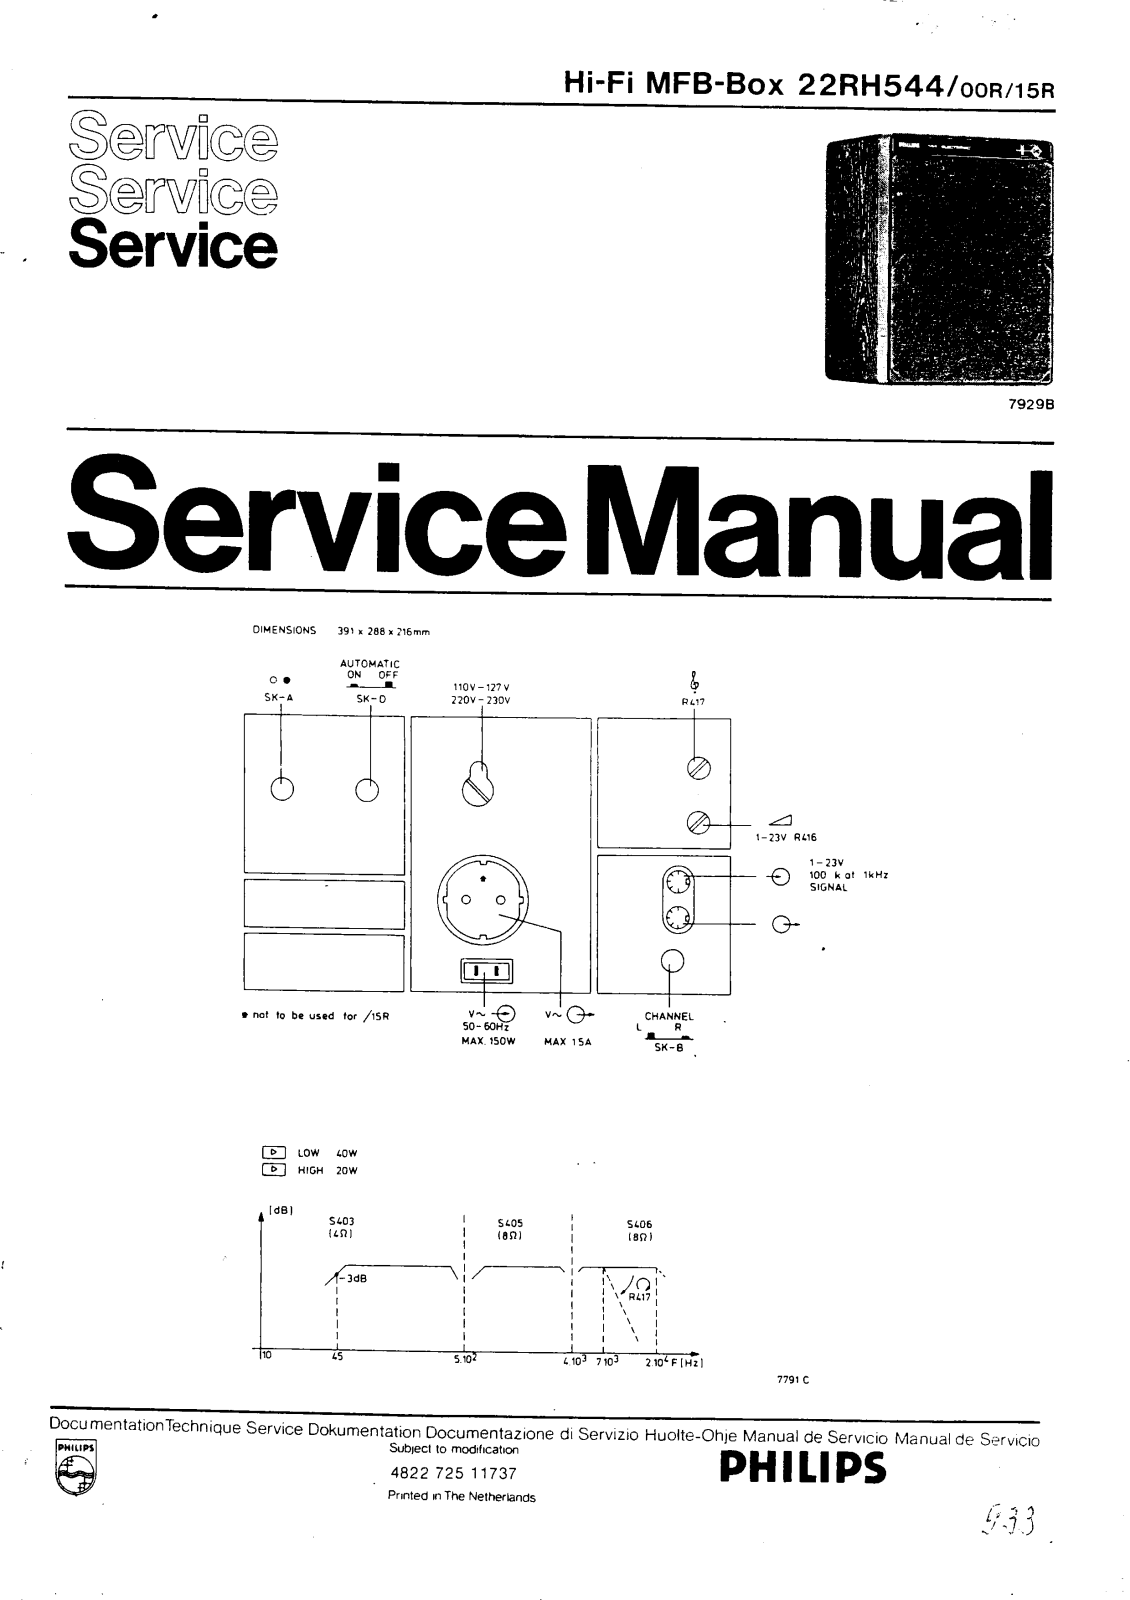 Philips 22RH544 00R, 22RH544 15R Service Manual